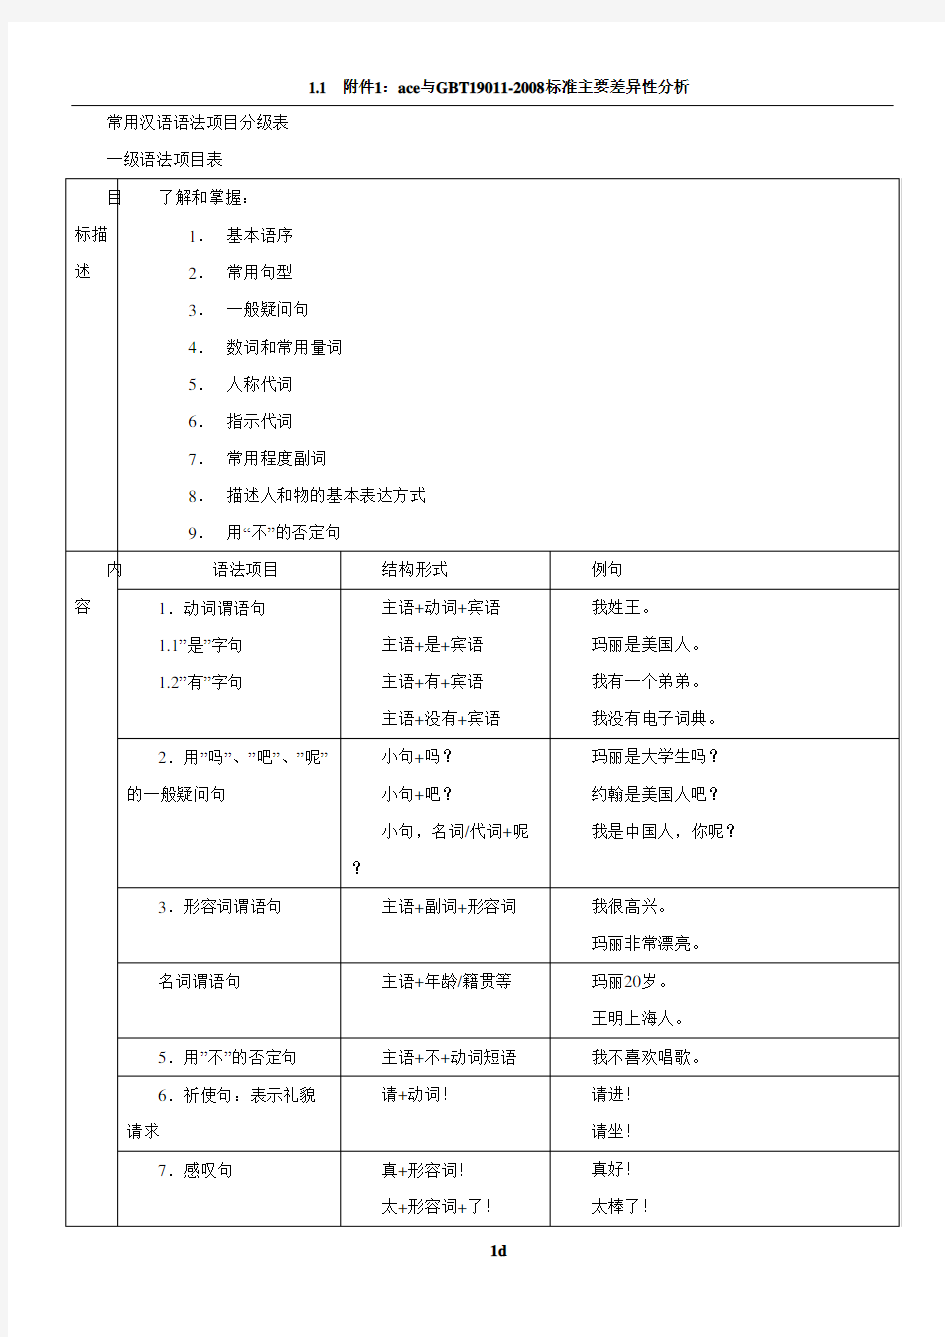 常用汉语语法项目分级表